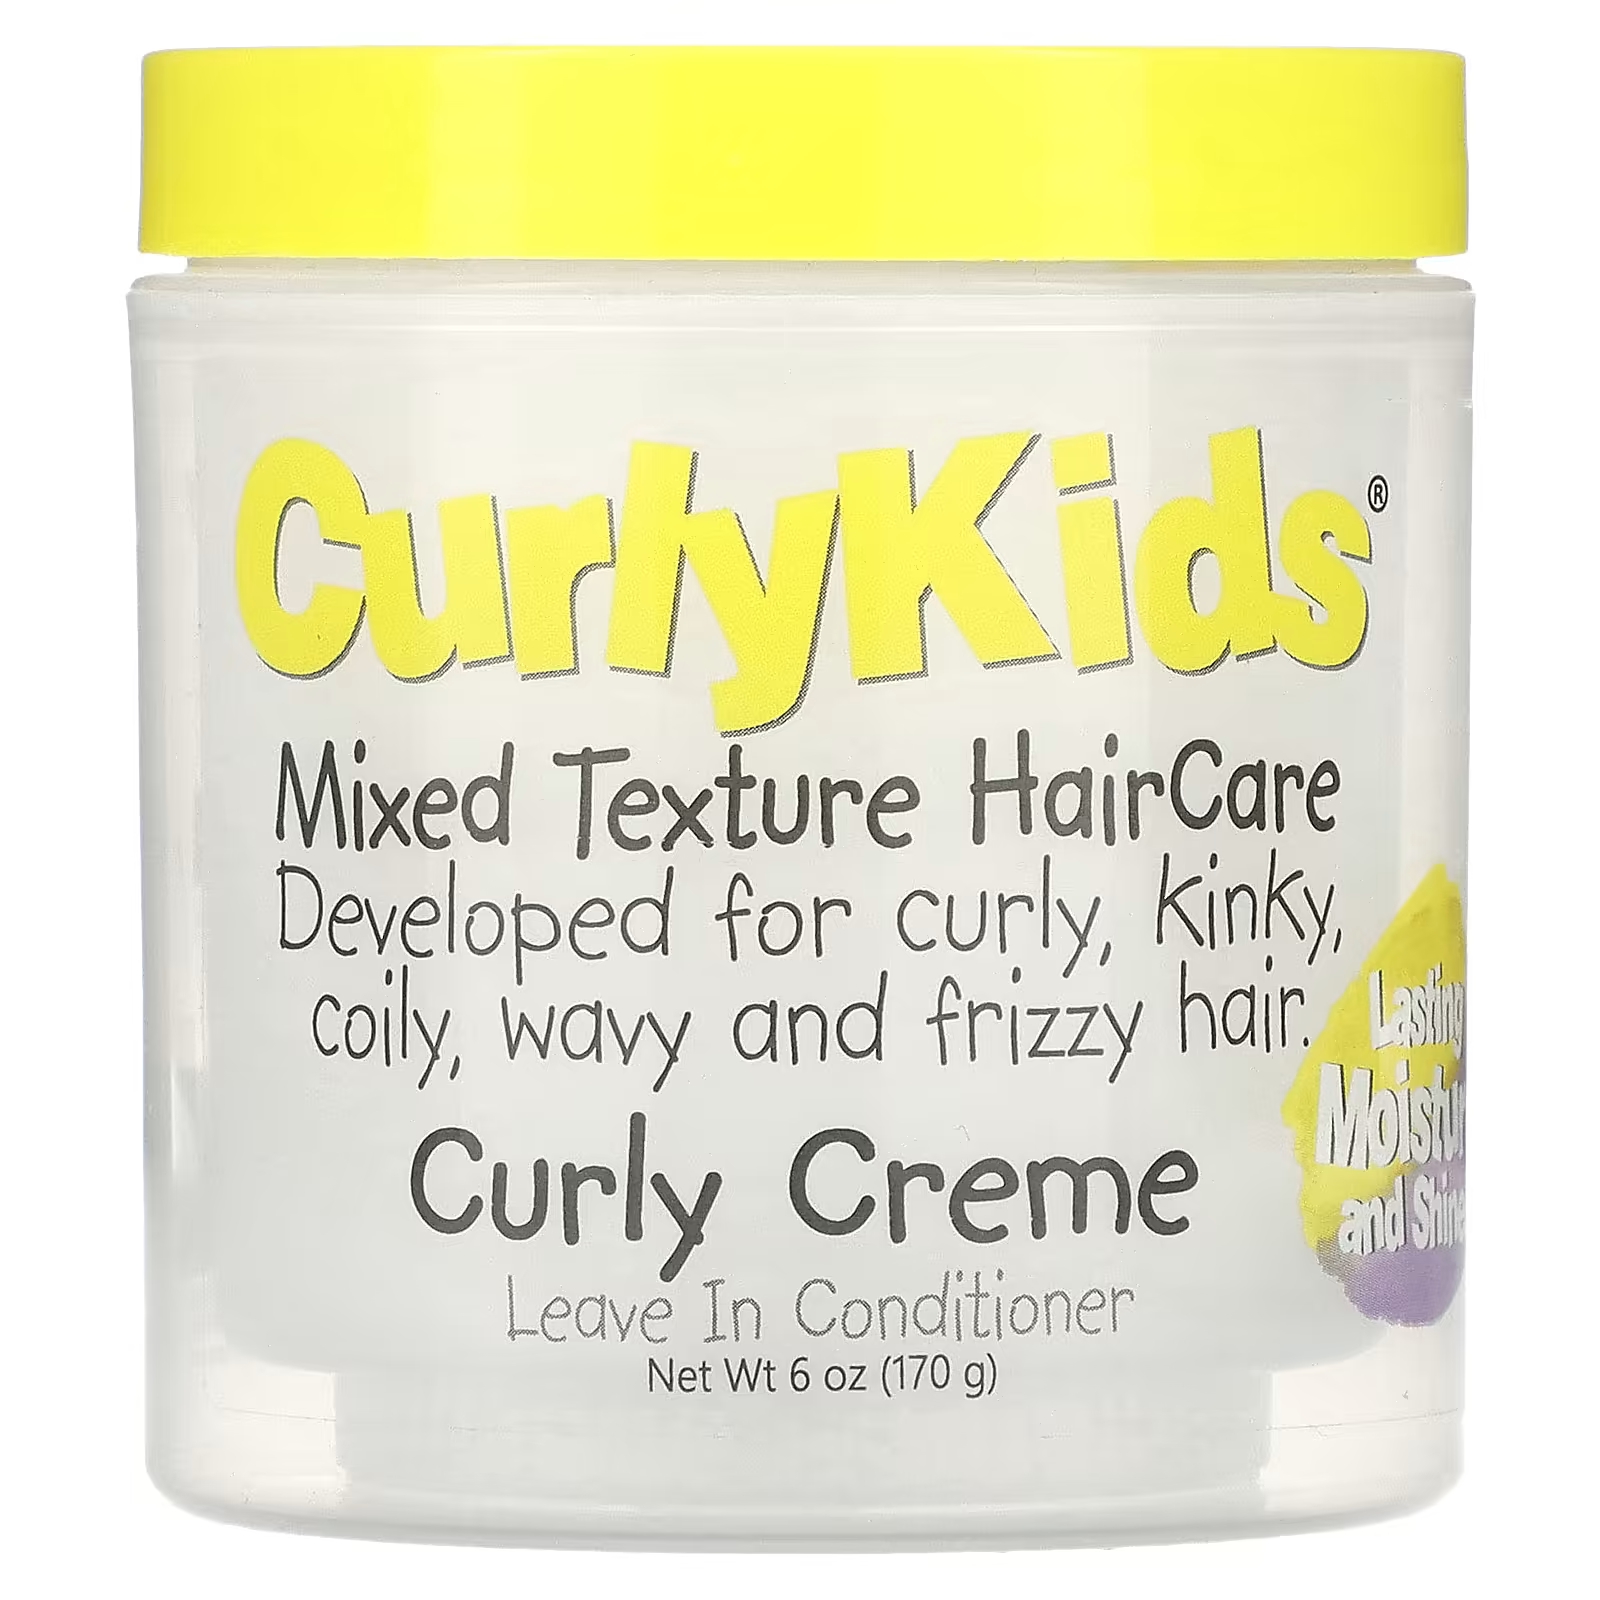 Кондиционер CurlyKids Curly Creme, 170 г curlykids уход за волосами смешанной текстуры гель для вьющихся волос контроль легкости 170 г 6 унций